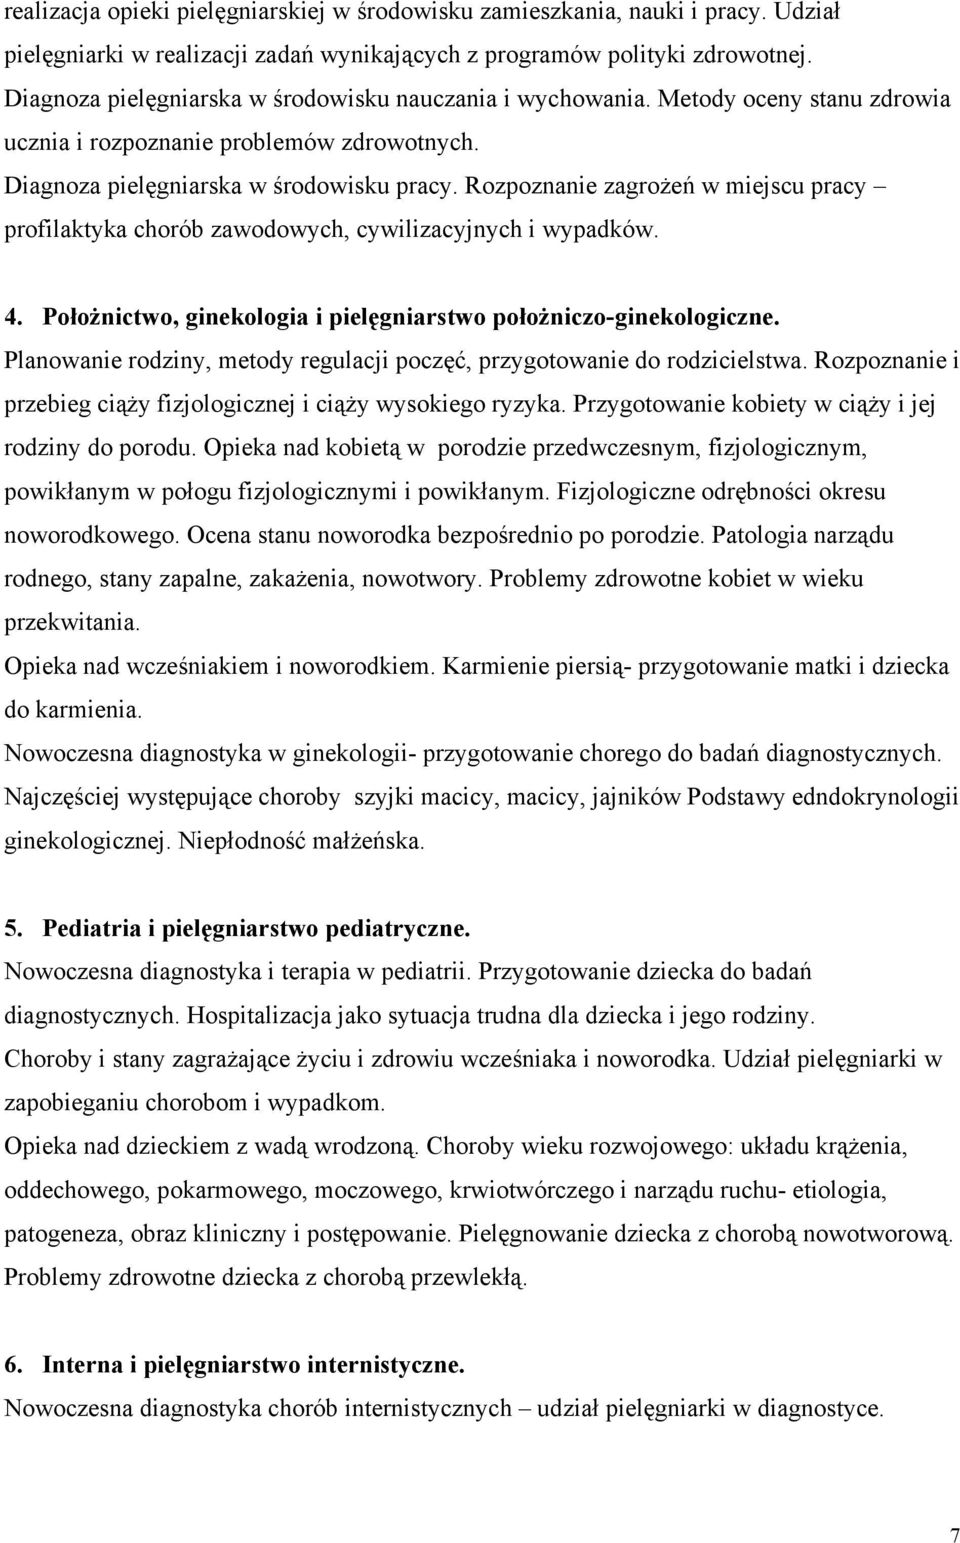 Rozpoznanie zagrożeń w miejscu pracy profilaktyka chorób zawodowych, cywilizacyjnych i wypadków. 4. Położnictwo, ginekologia i pielęgniarstwo położniczo-ginekologiczne.